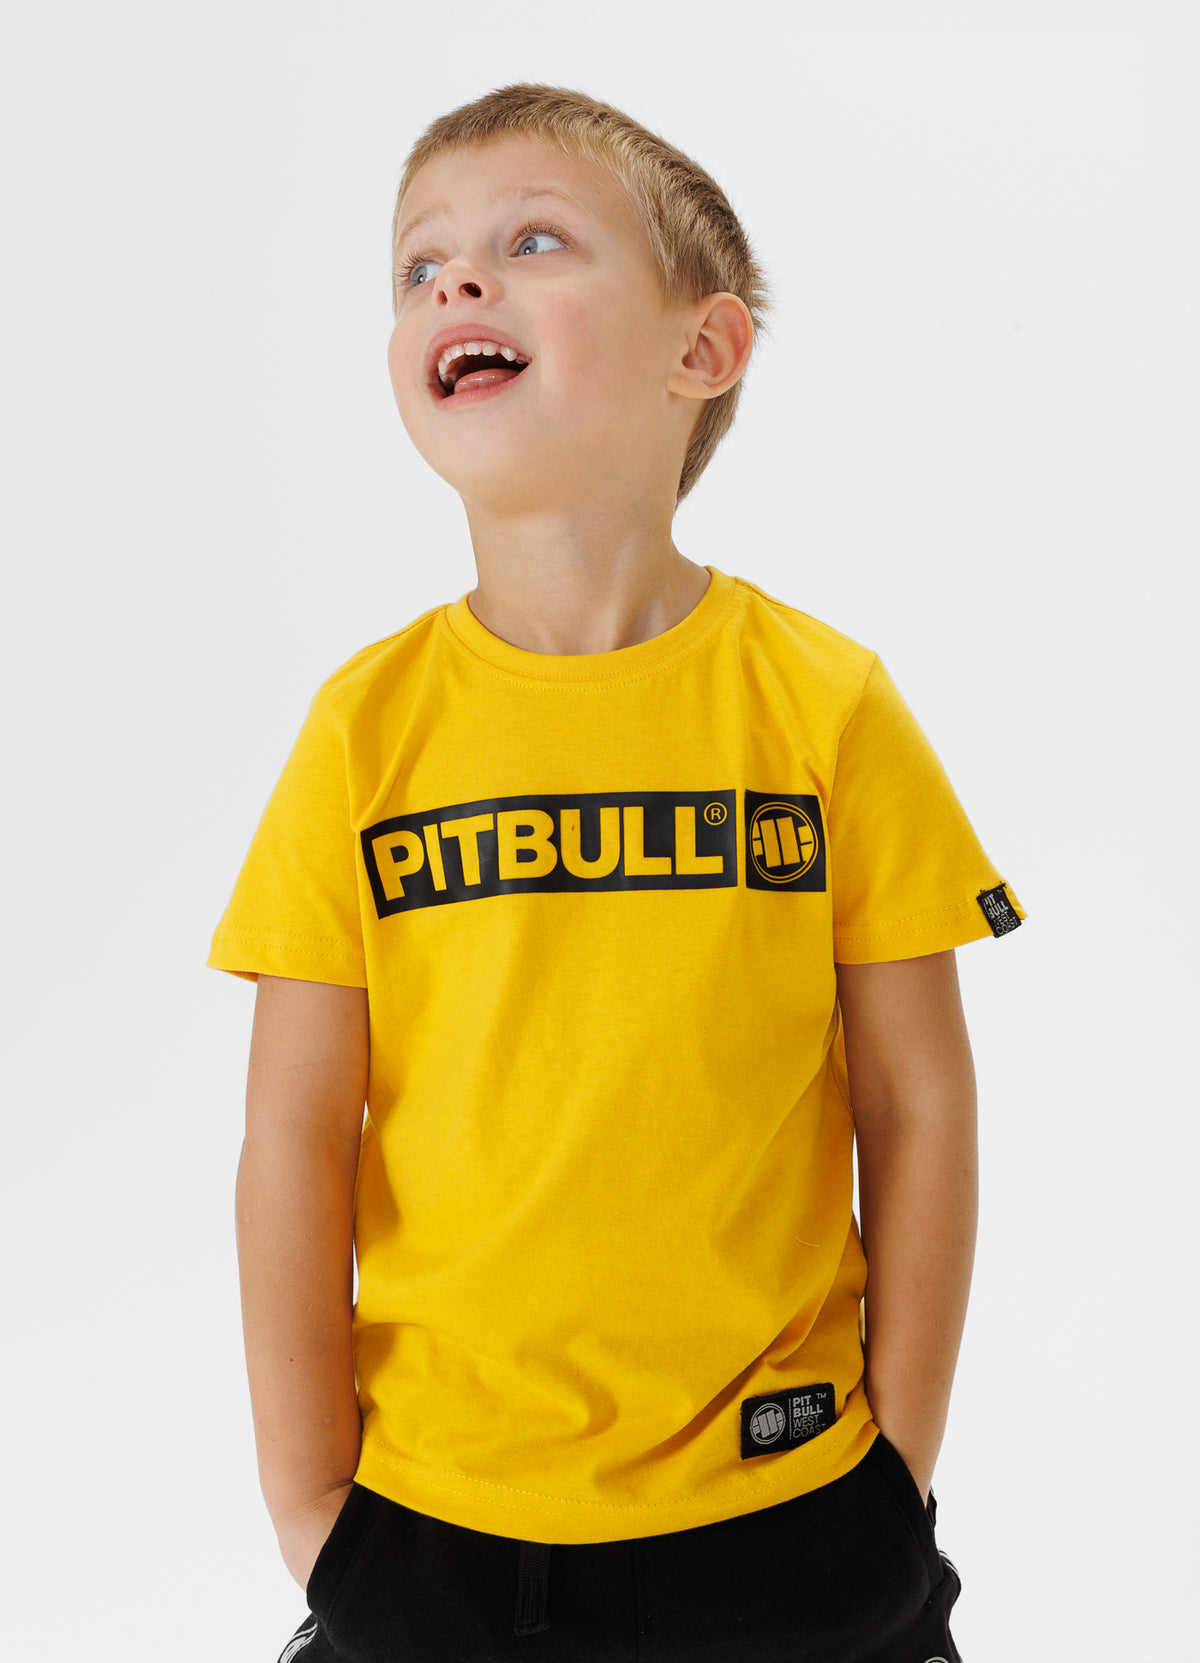 HILLTOP kids yellow t-shirt - Pitbullstore.eu